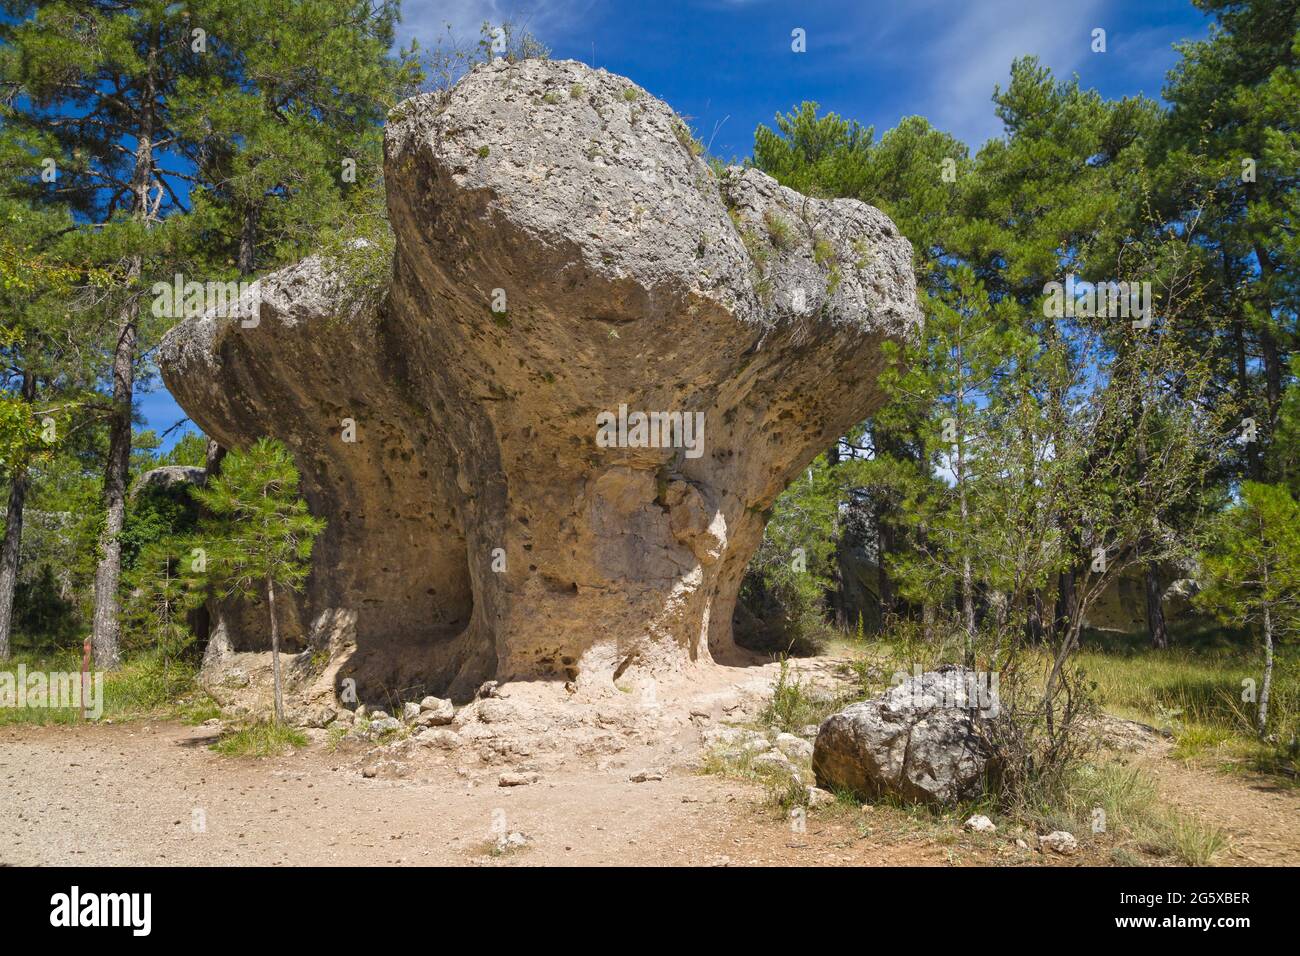 Mushroom-shaped rock formation in the Ciudad Encantada, Cuenca, Spain. Stock Photo